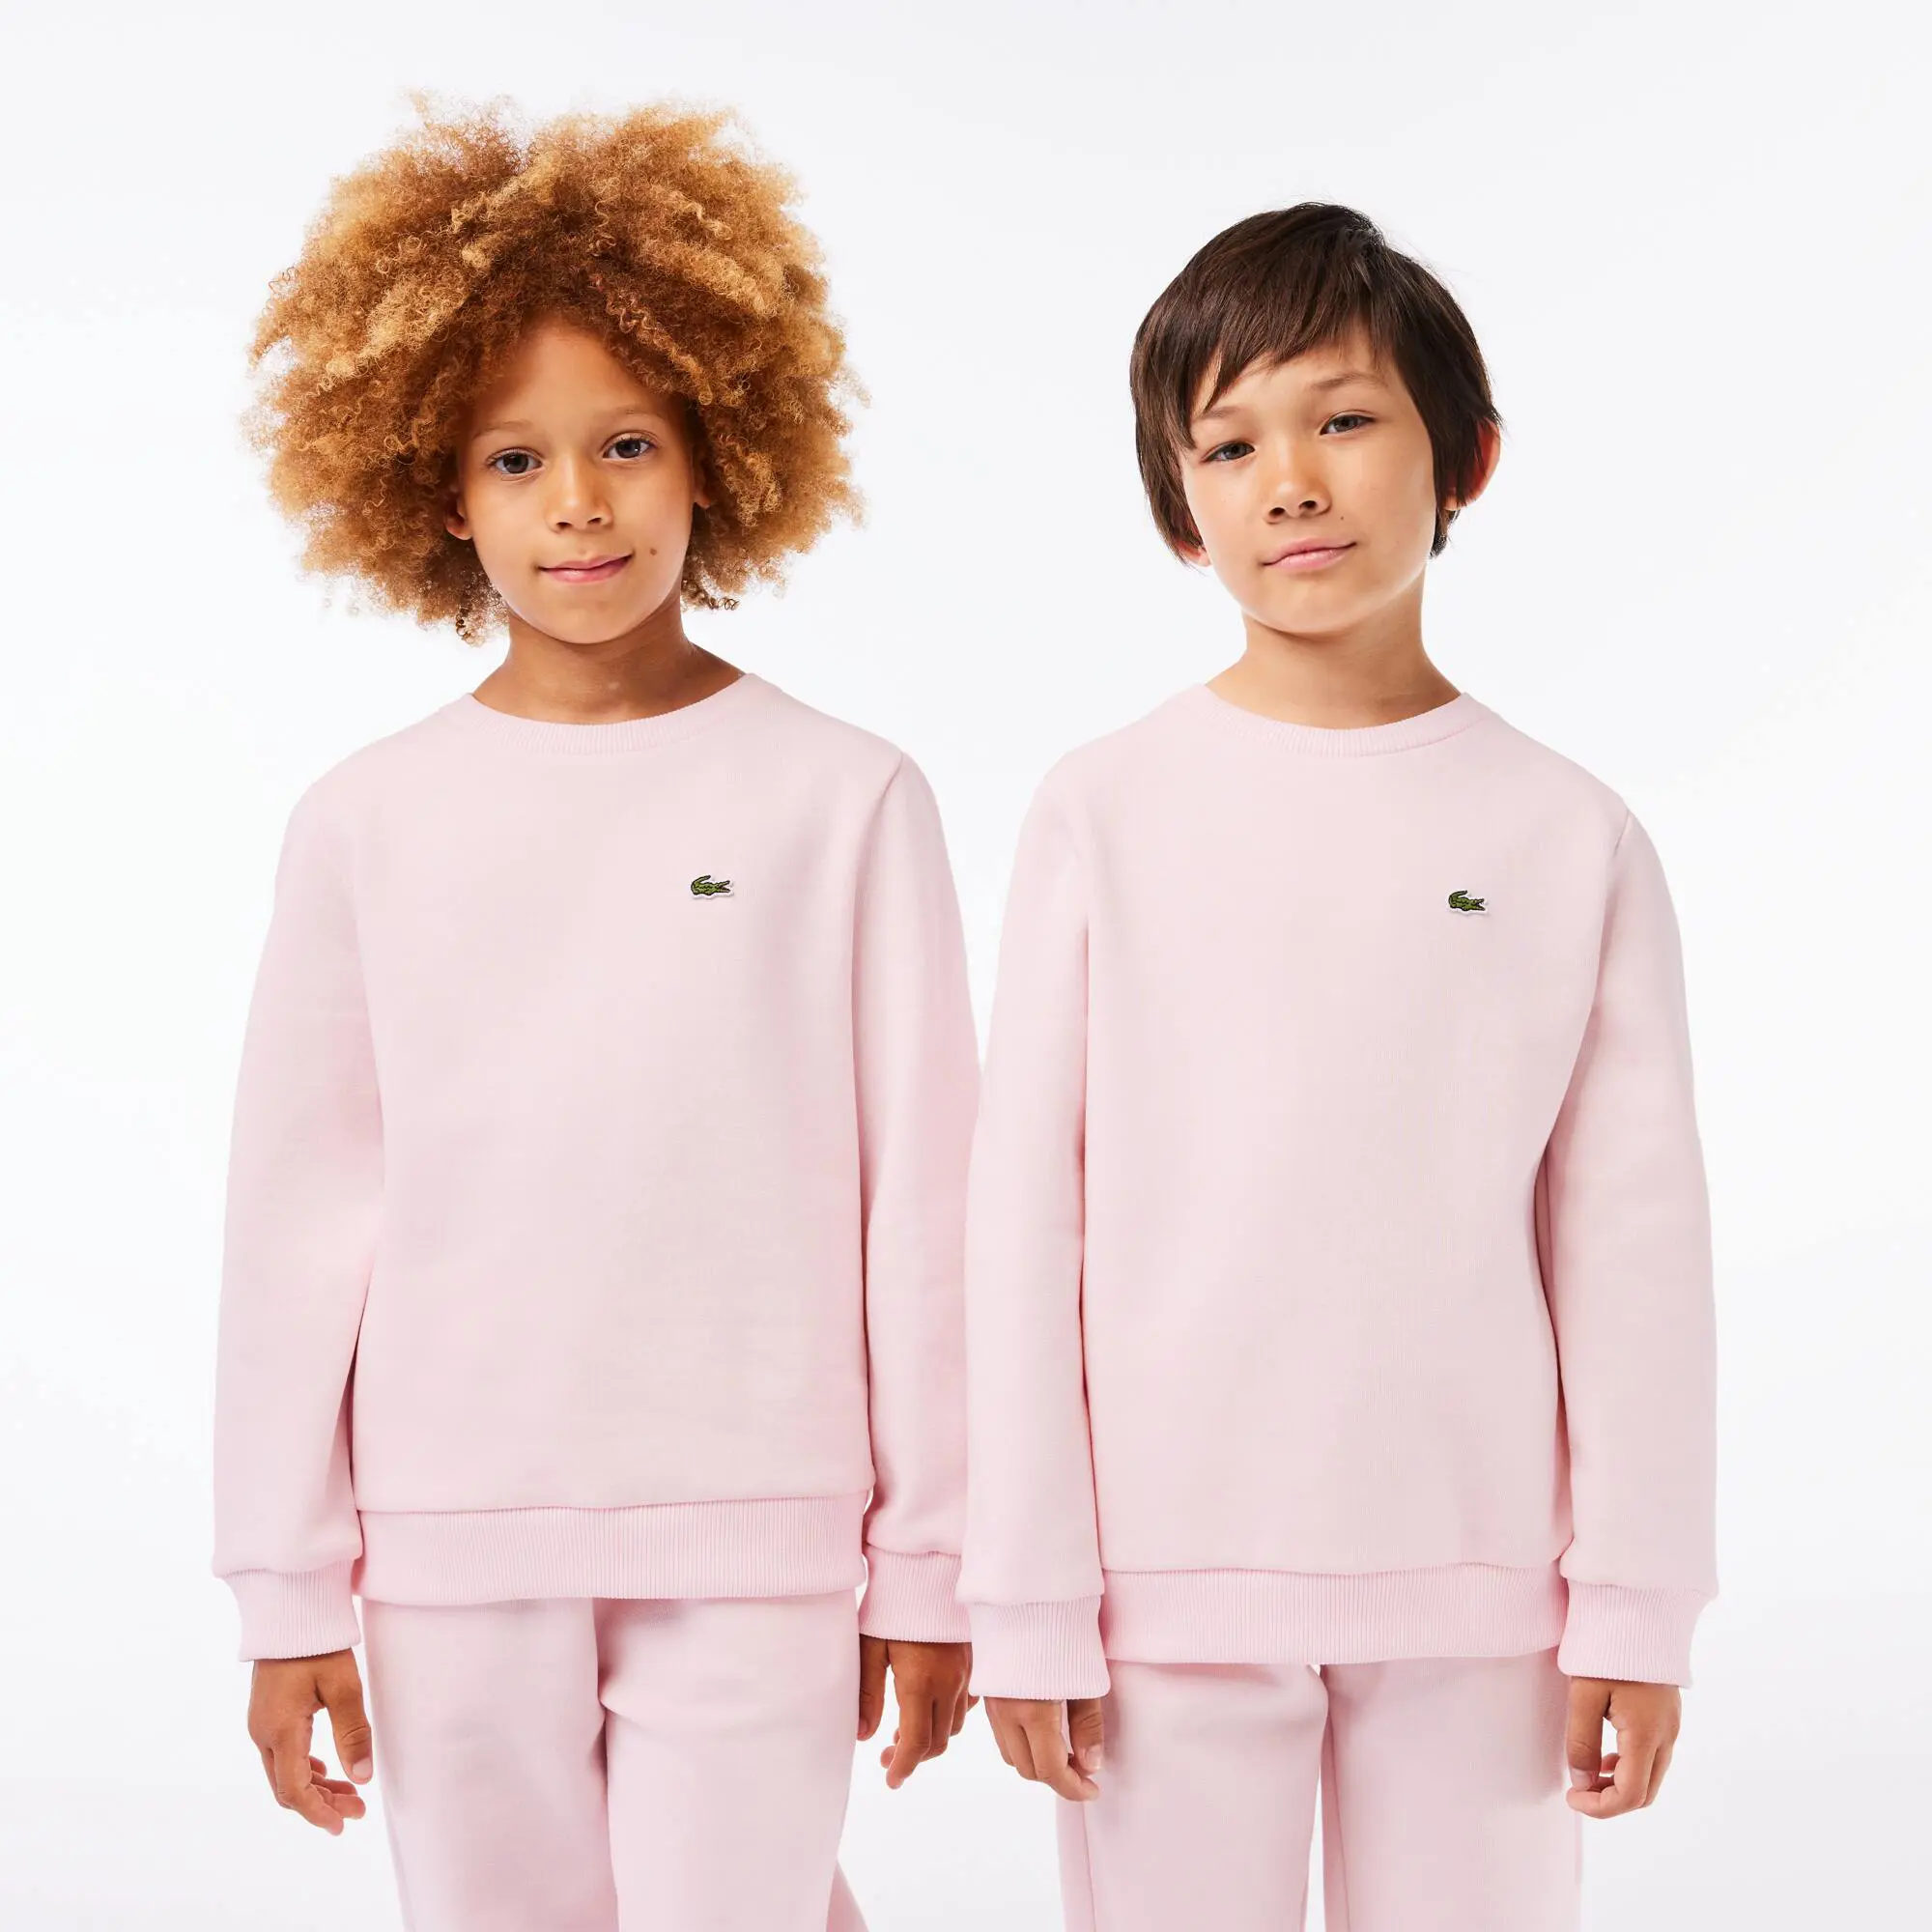 Lacoste Kids’ Lacoste Organic Cotton Flannel Sweatshirt. 1